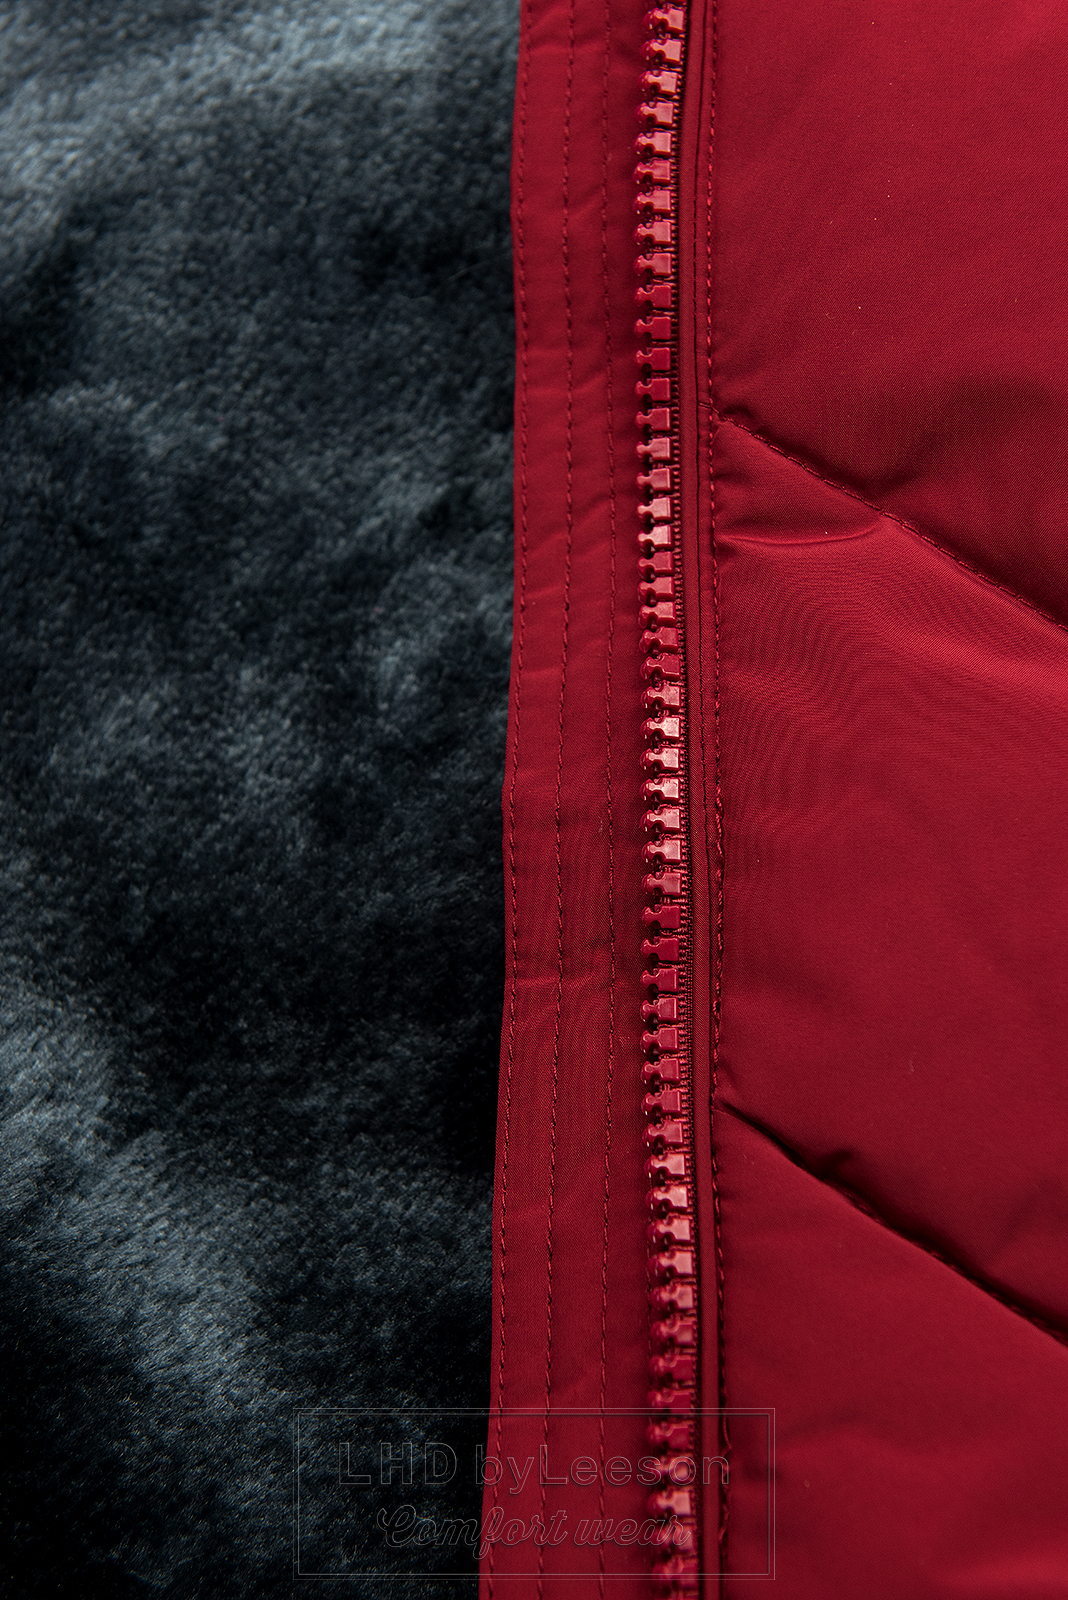 Winowo-czerwona pikowana kurtka zimowa z odpinaną kapturem